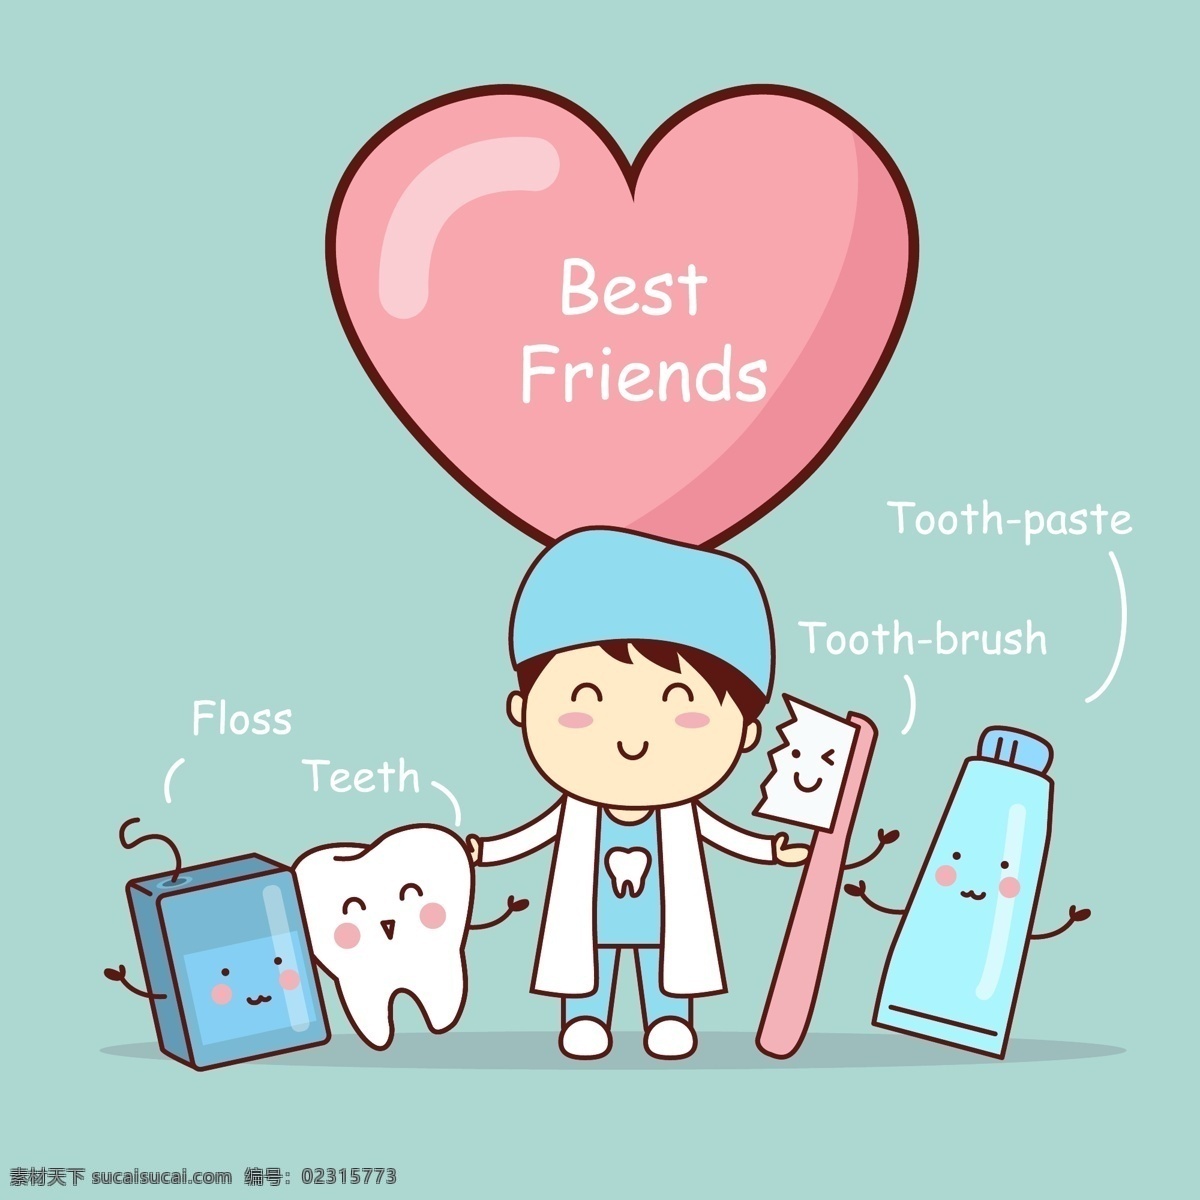 爱护 牙齿 卡通 可爱 小 扁平 画 矢量 医生 护士 健康 教育 广告 平面 人物 动画 动漫 插画 牙刷 牙膏